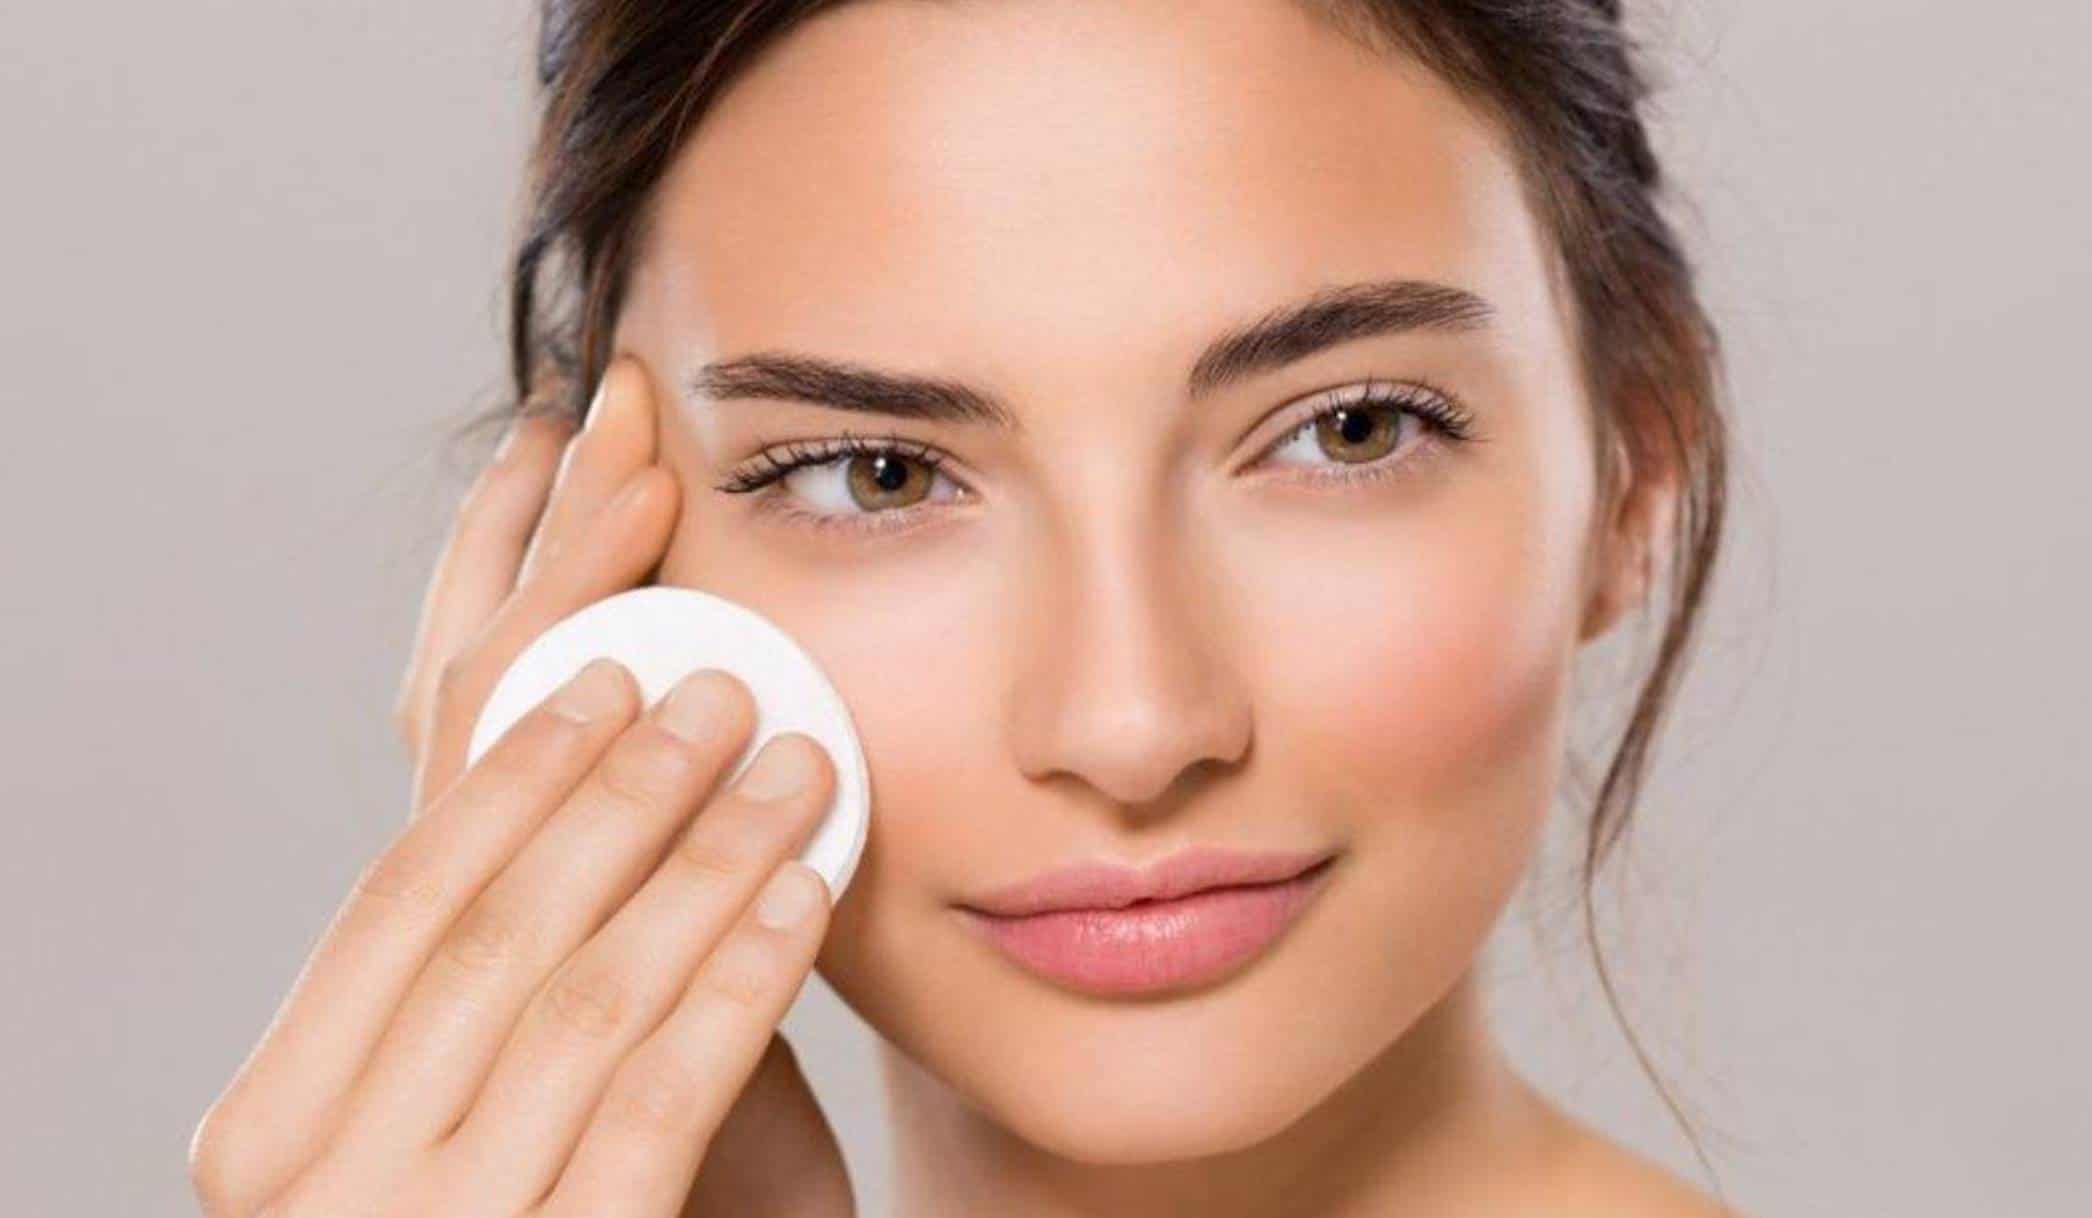 Rejuvenesça sua pele do rosto com este incrível tratamento de beleza que leva 5 ingredientes